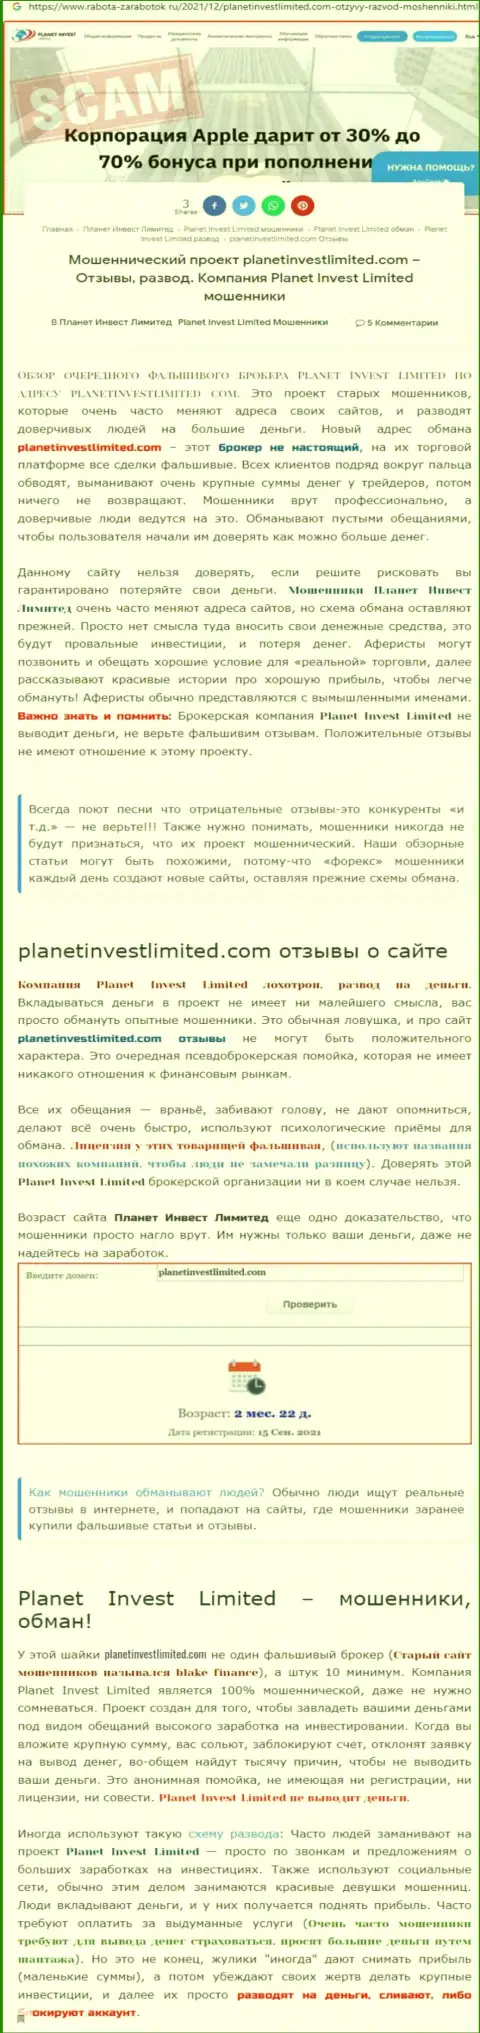 Не рискованно ли совместно работать с организацией Planet Invest Limited ??? (Обзор организации)